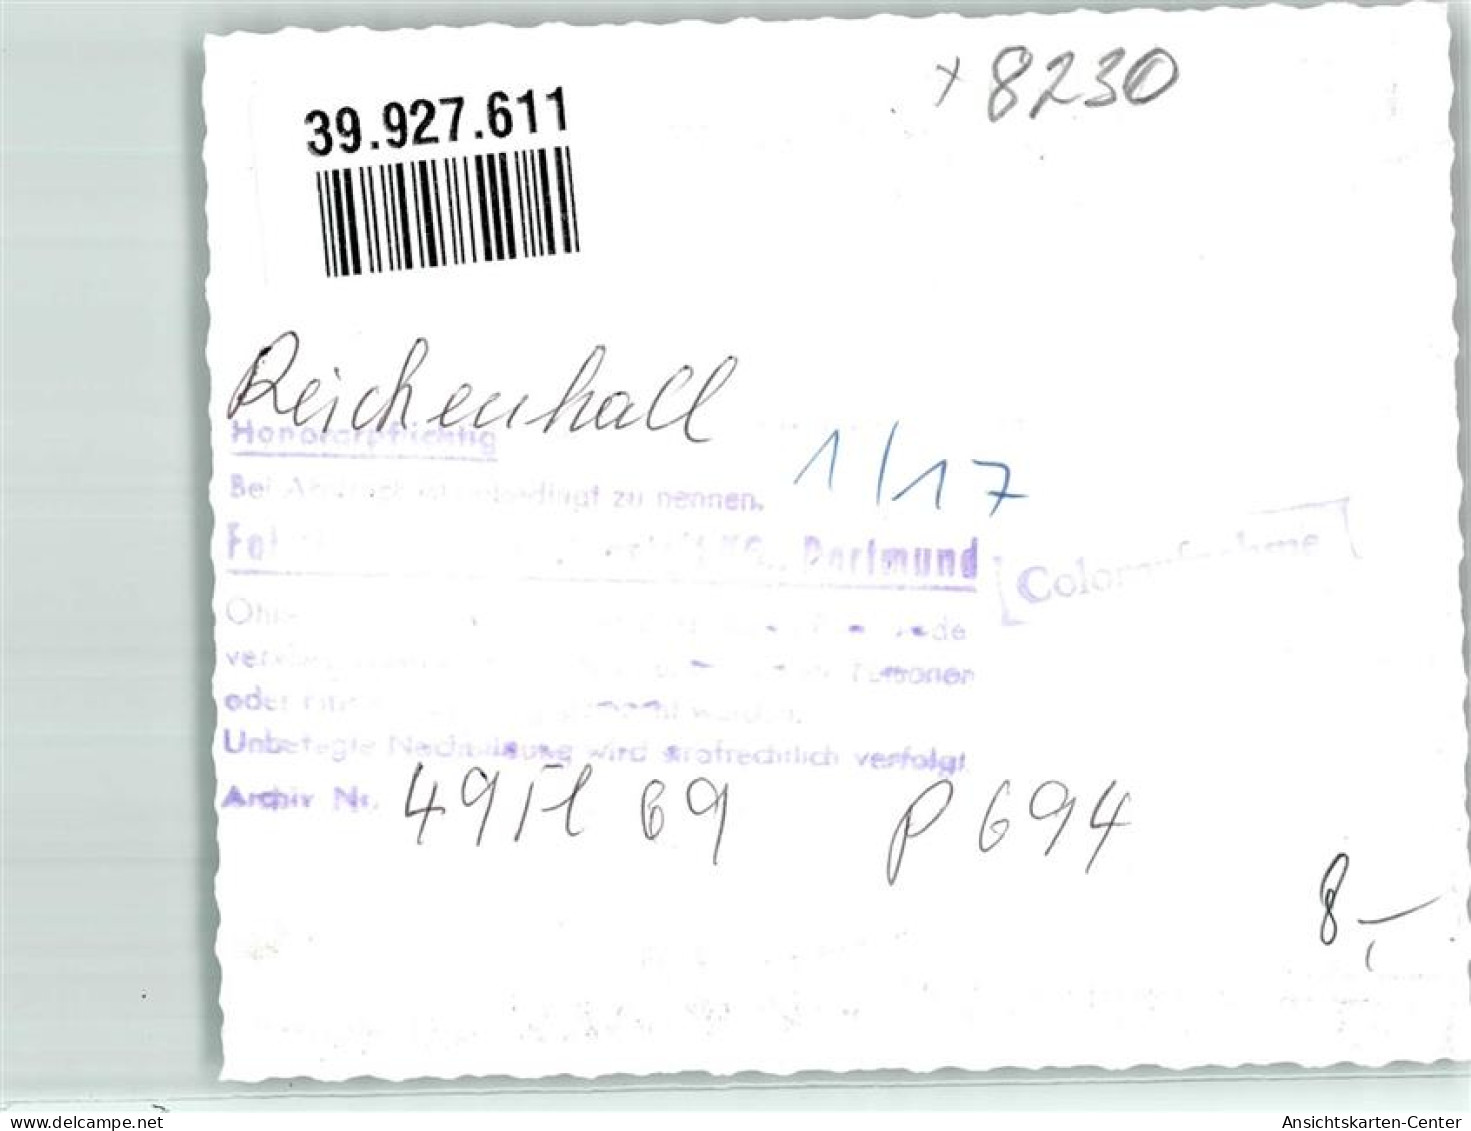 39927611 - Bad Reichenhall - Bad Reichenhall